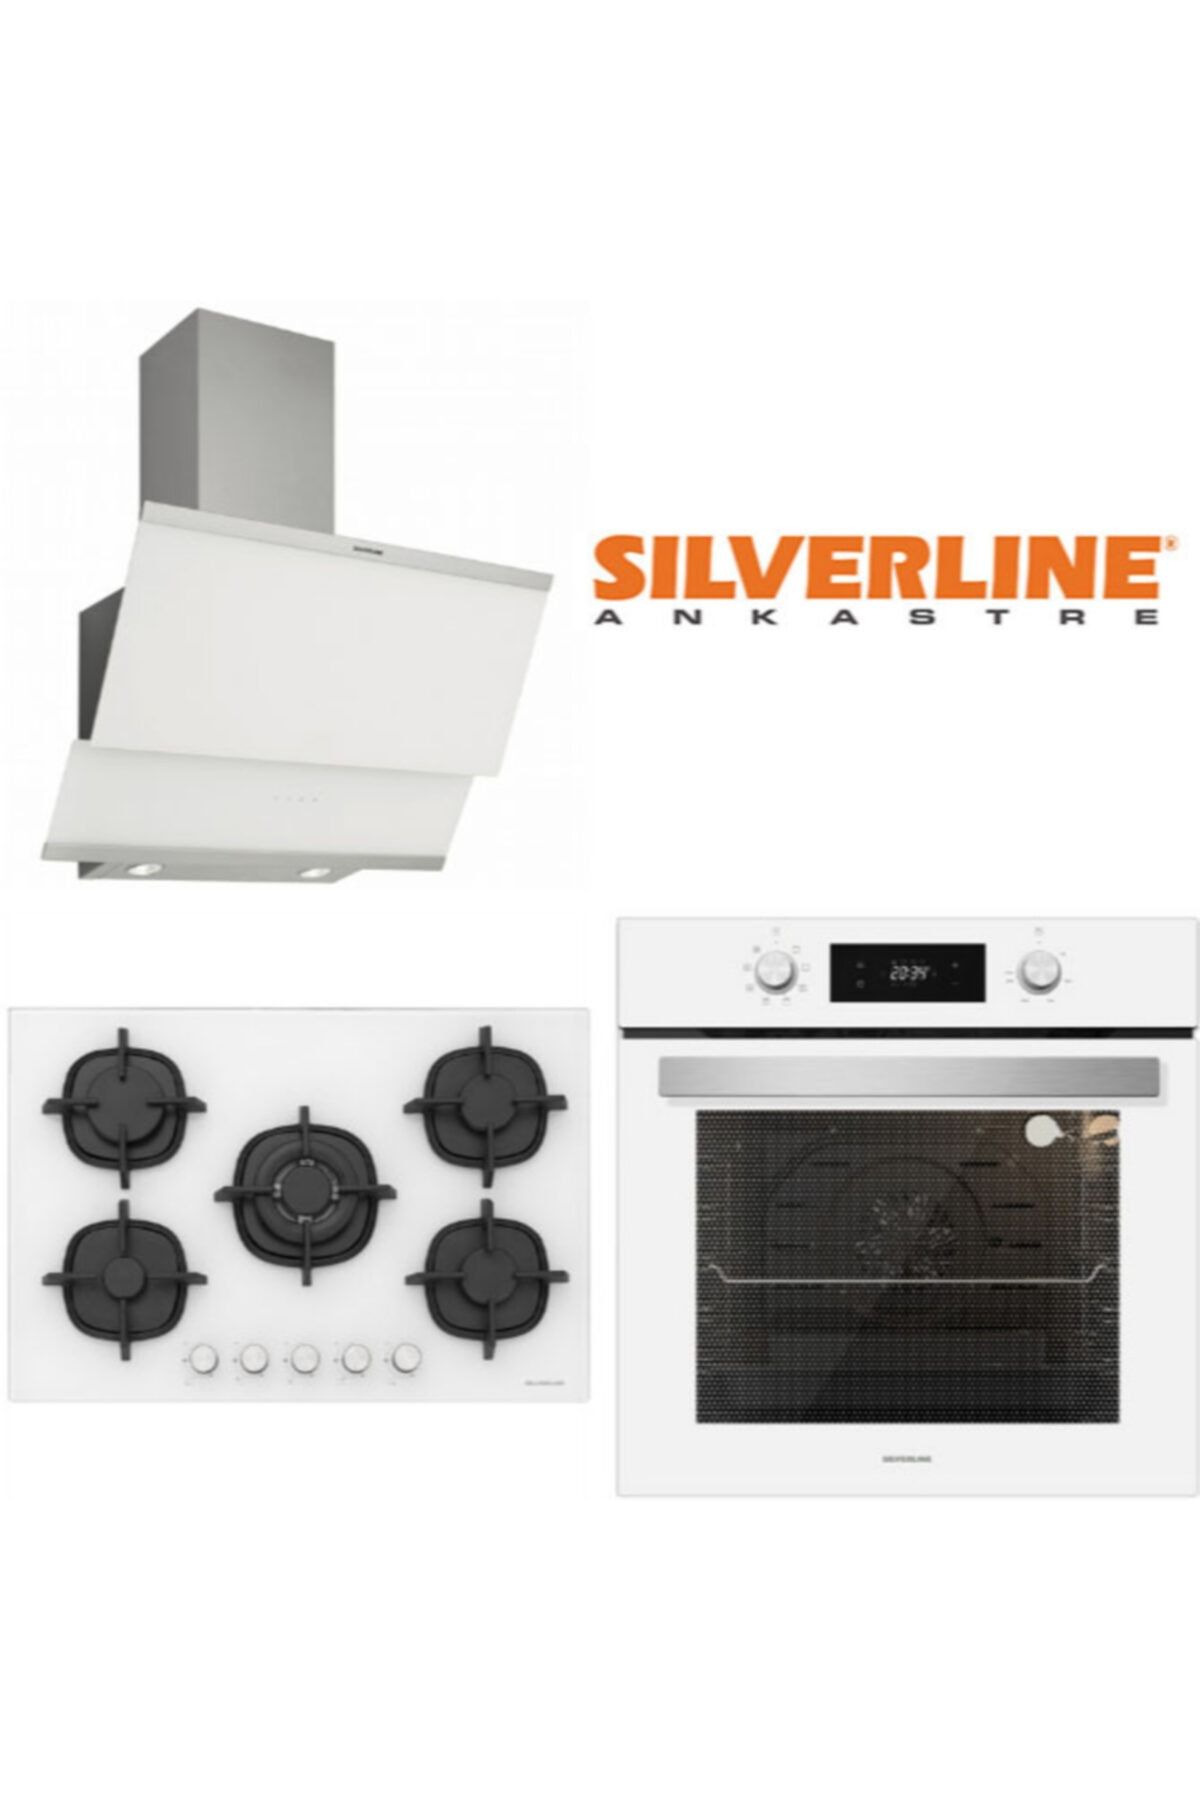 Silverline Sılverlıne Ankastre Set (Bo6504w01-3420 W Classy-cs5364w01)